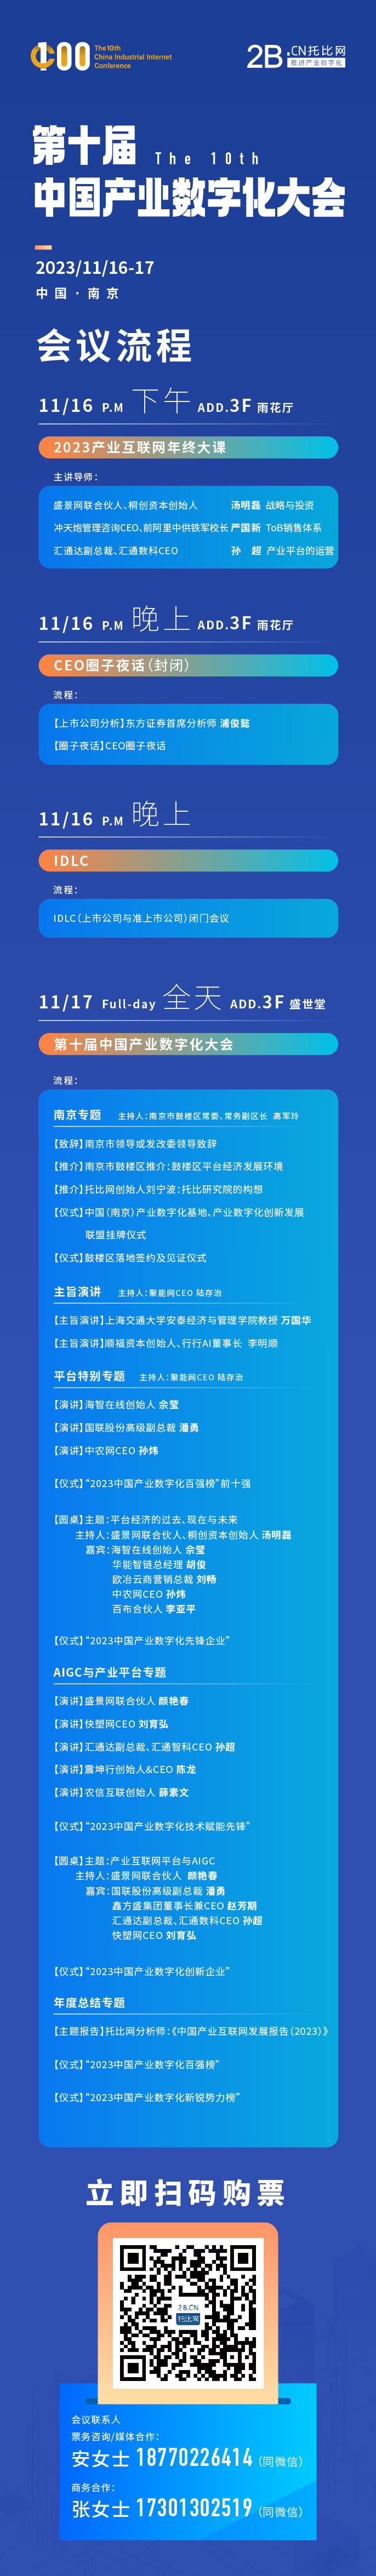 华秋预祝中国第十届产业数字化大会成功举办